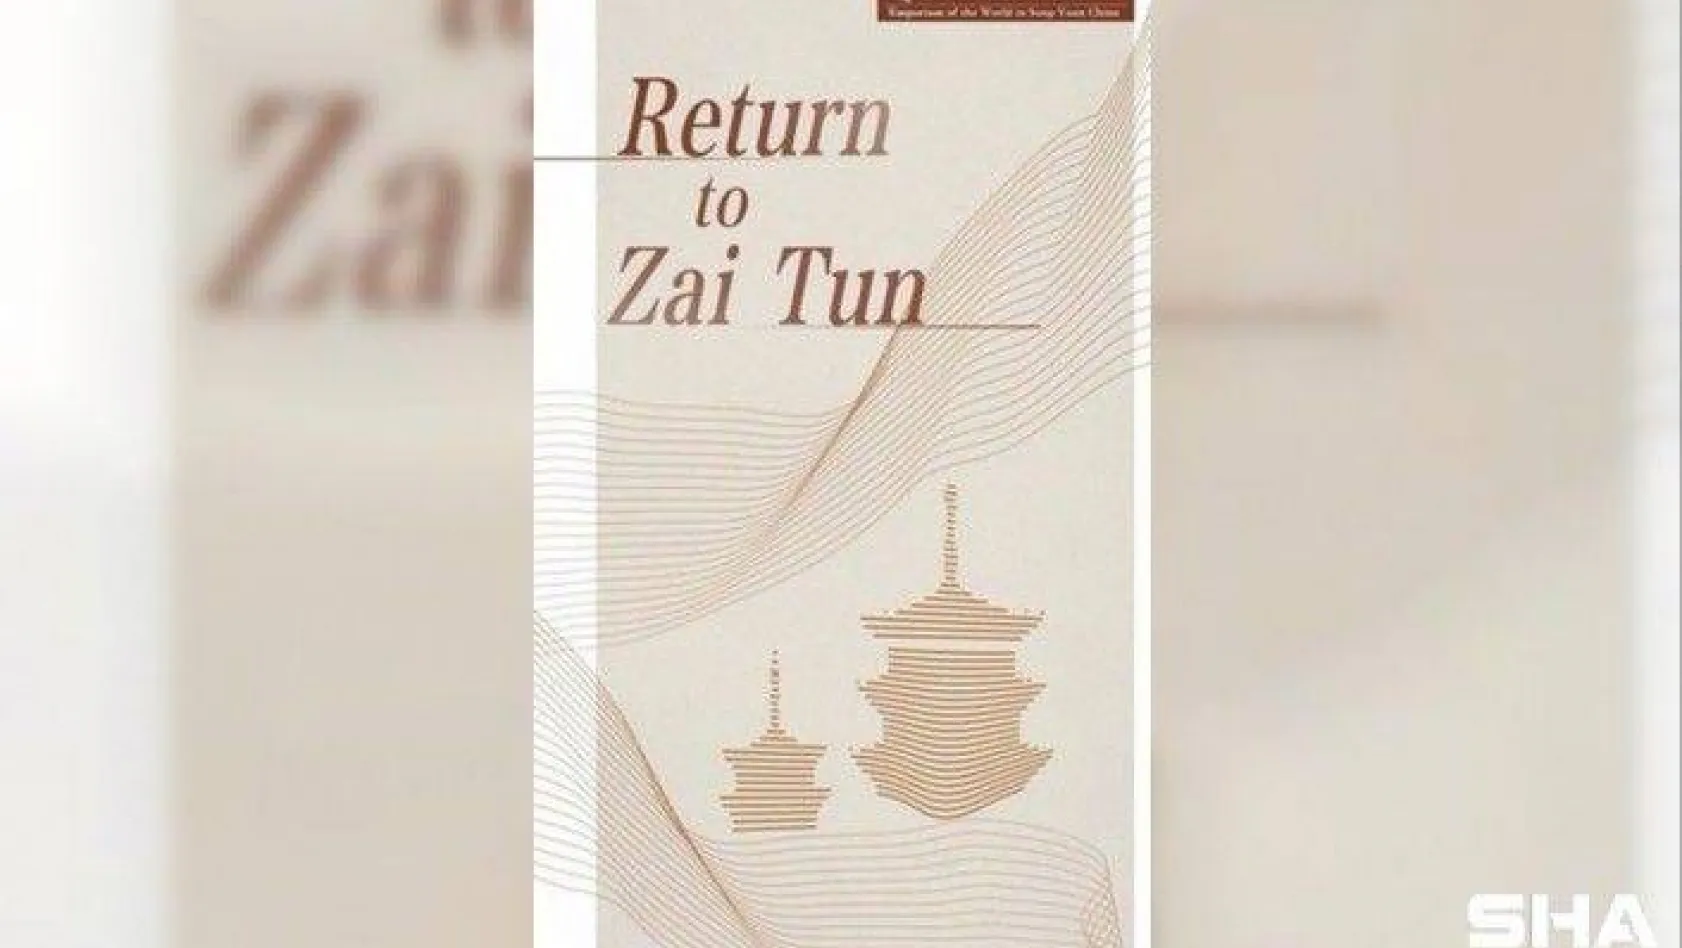 'Zai Tun'a Dönüş' belgeseli 170 ülke ve bölgede yayınlanıyor